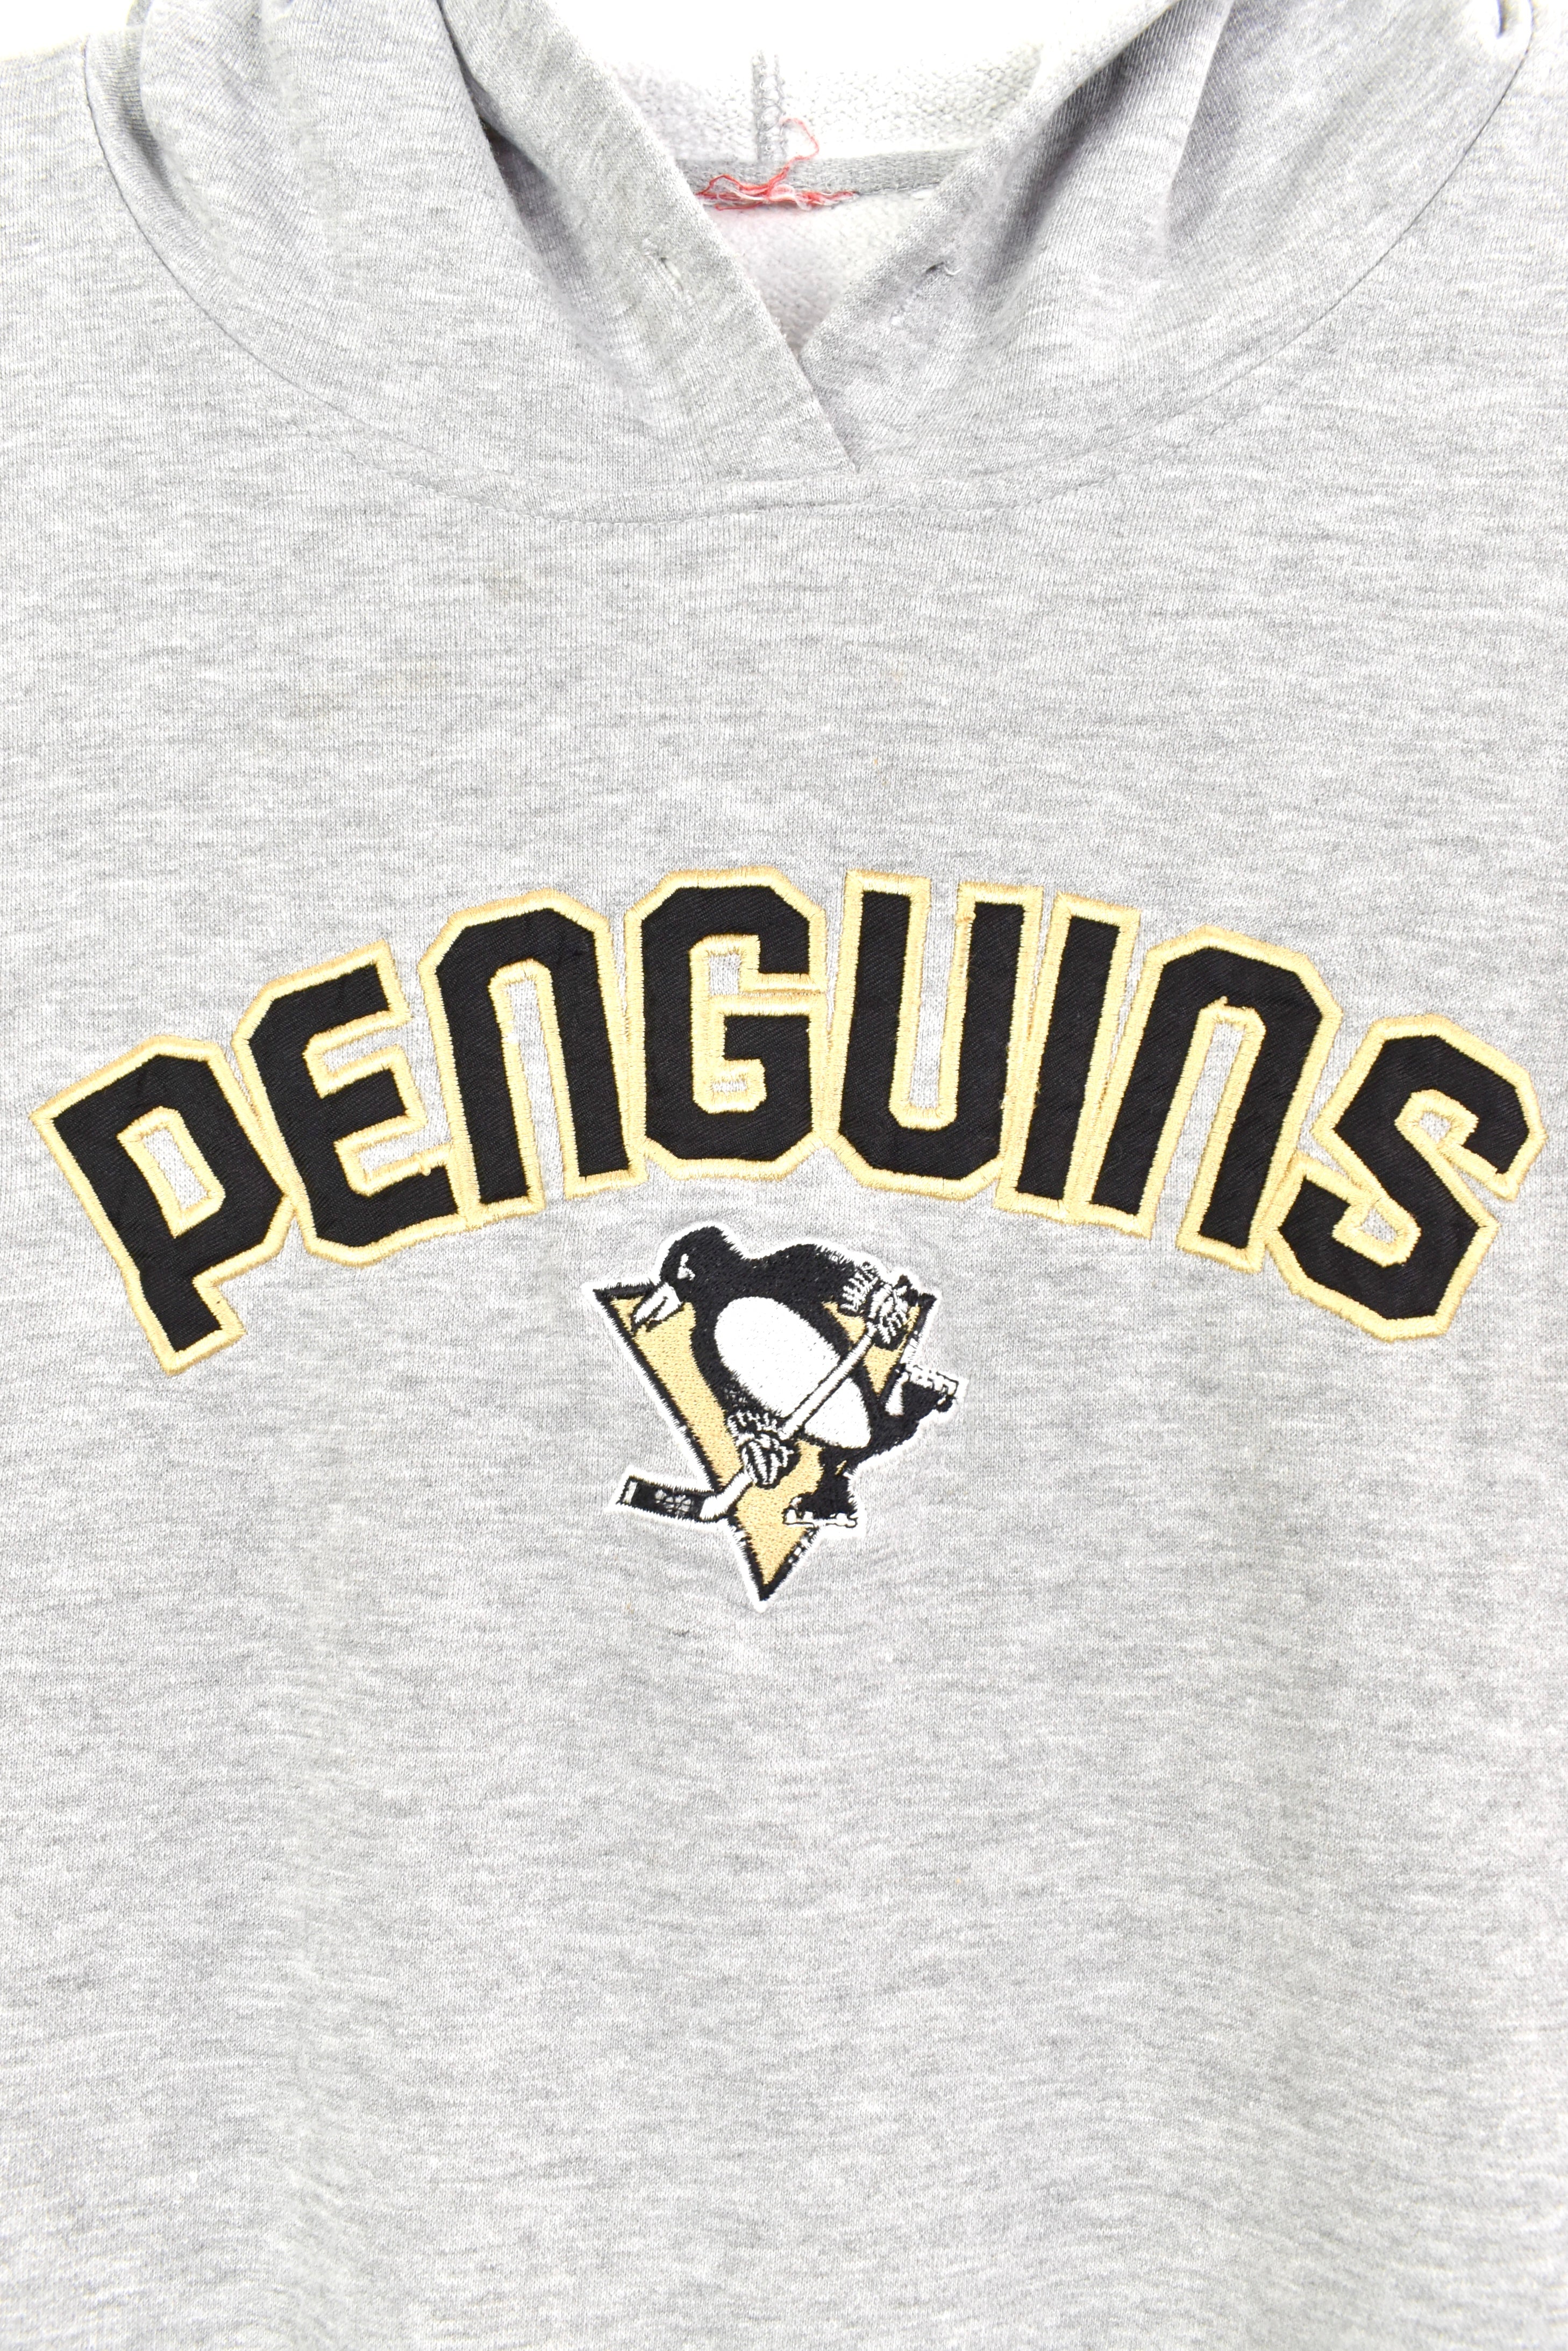 Penguins Hockey Sweatshirt - Pittsburgh Vintage Unisex Hoodie Long Sleeve